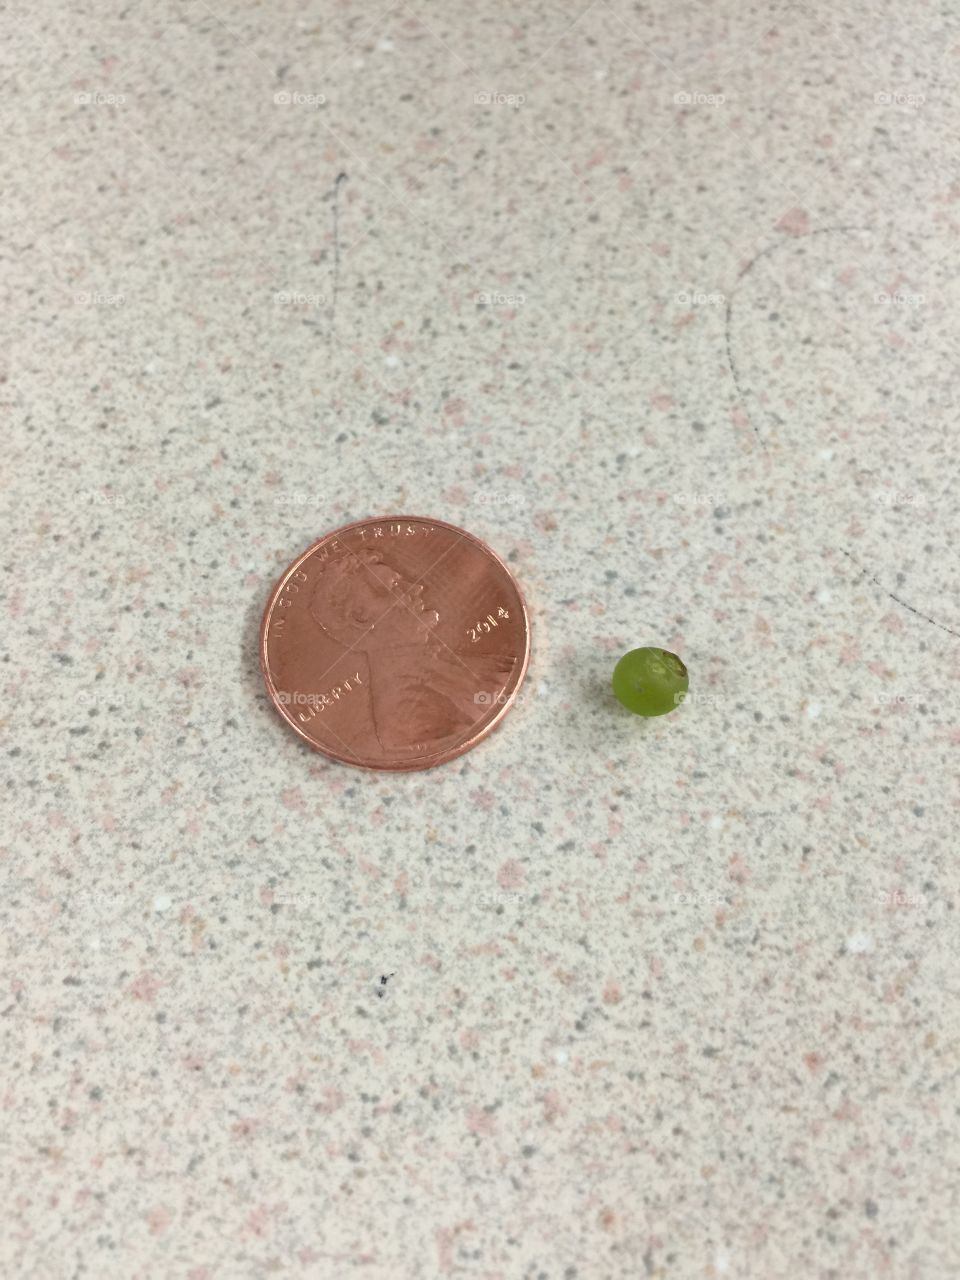 Tiniest grape ever!